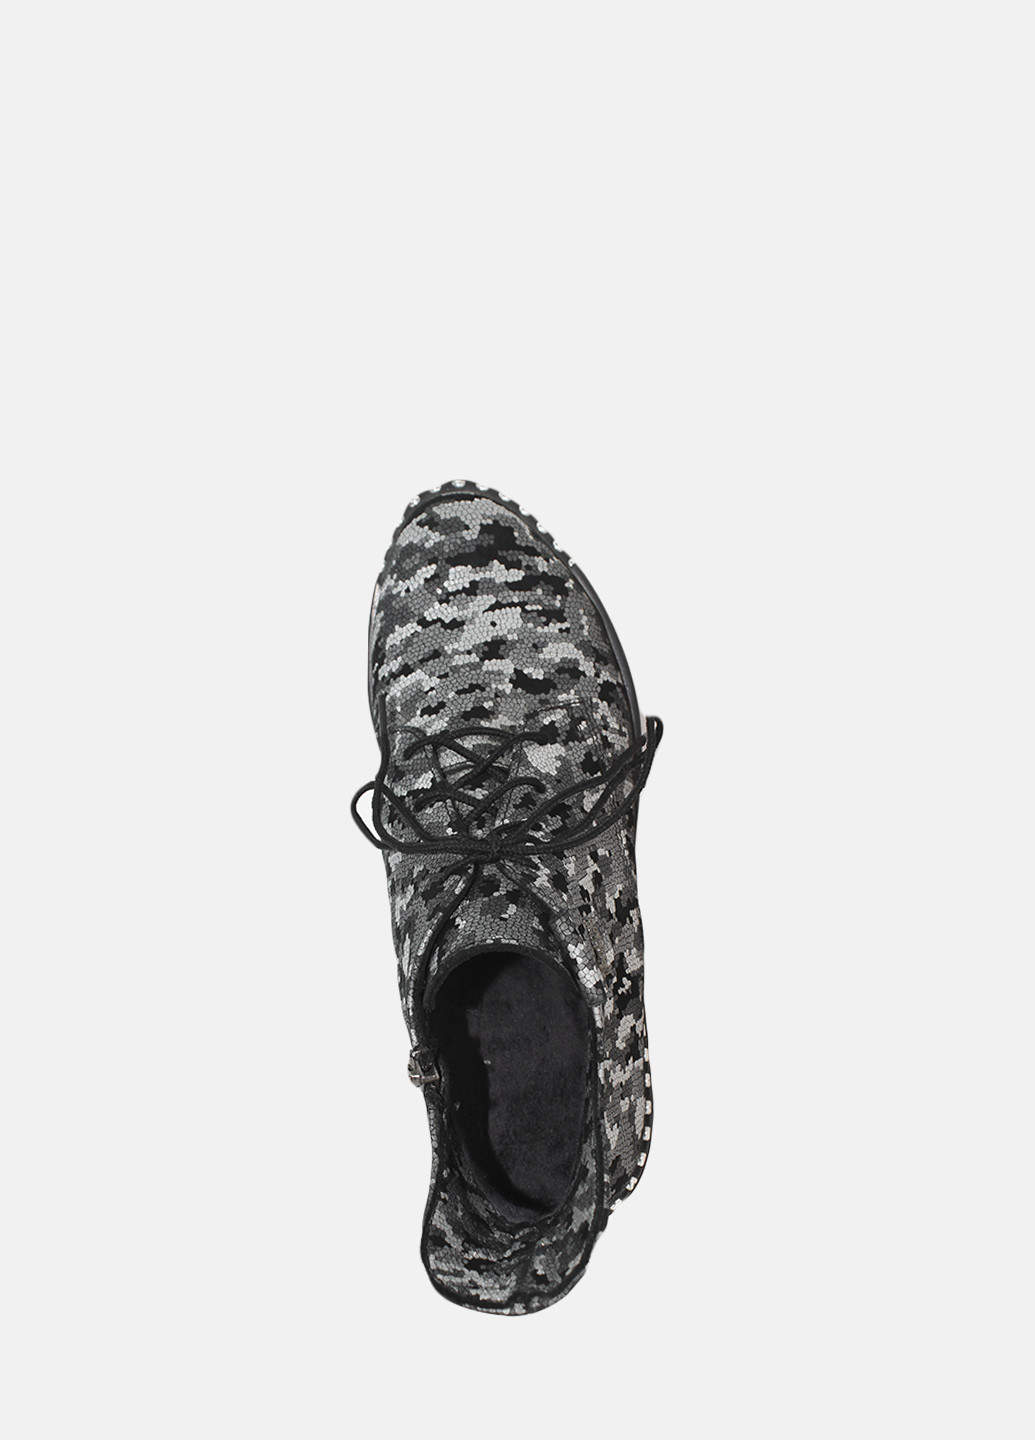 Осенние ботинки re0654 серый Emilio из натуральной замши